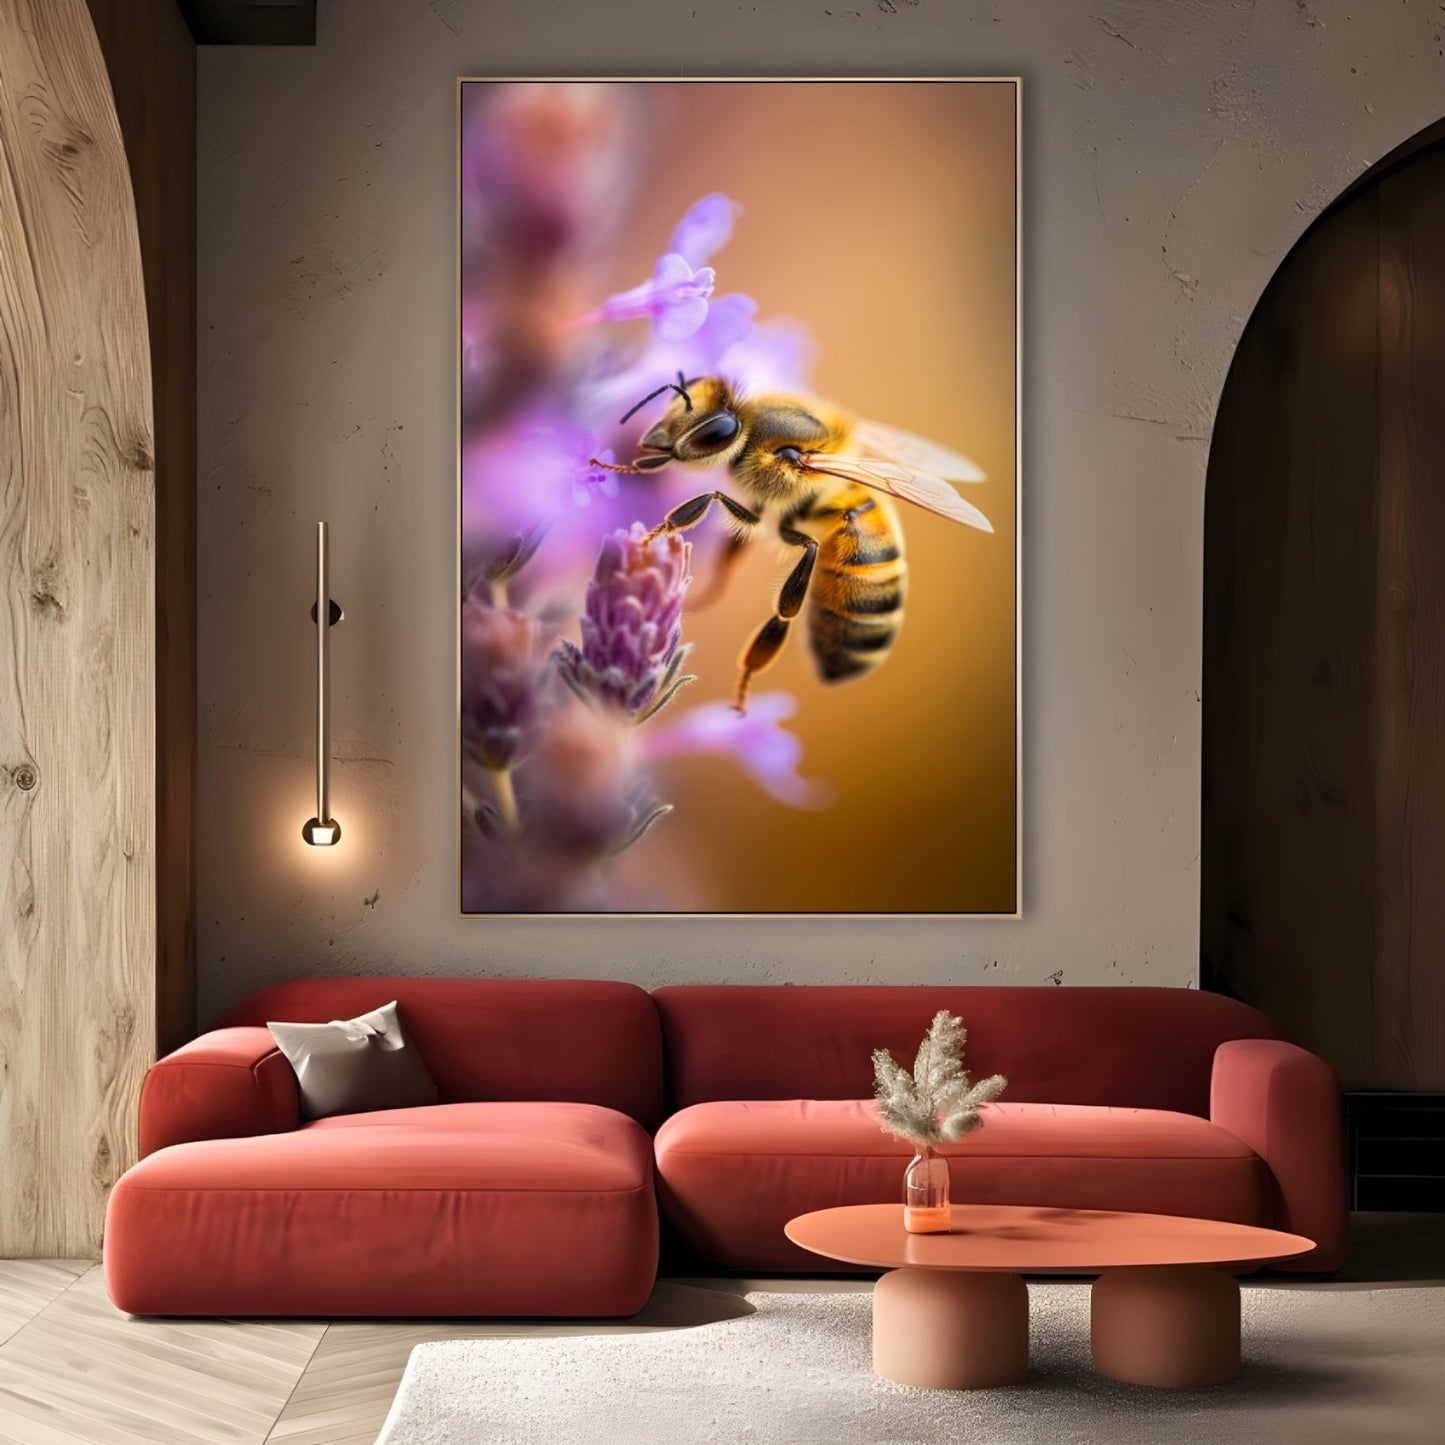 Μέλισσα ανάμεσα στα πέταλα